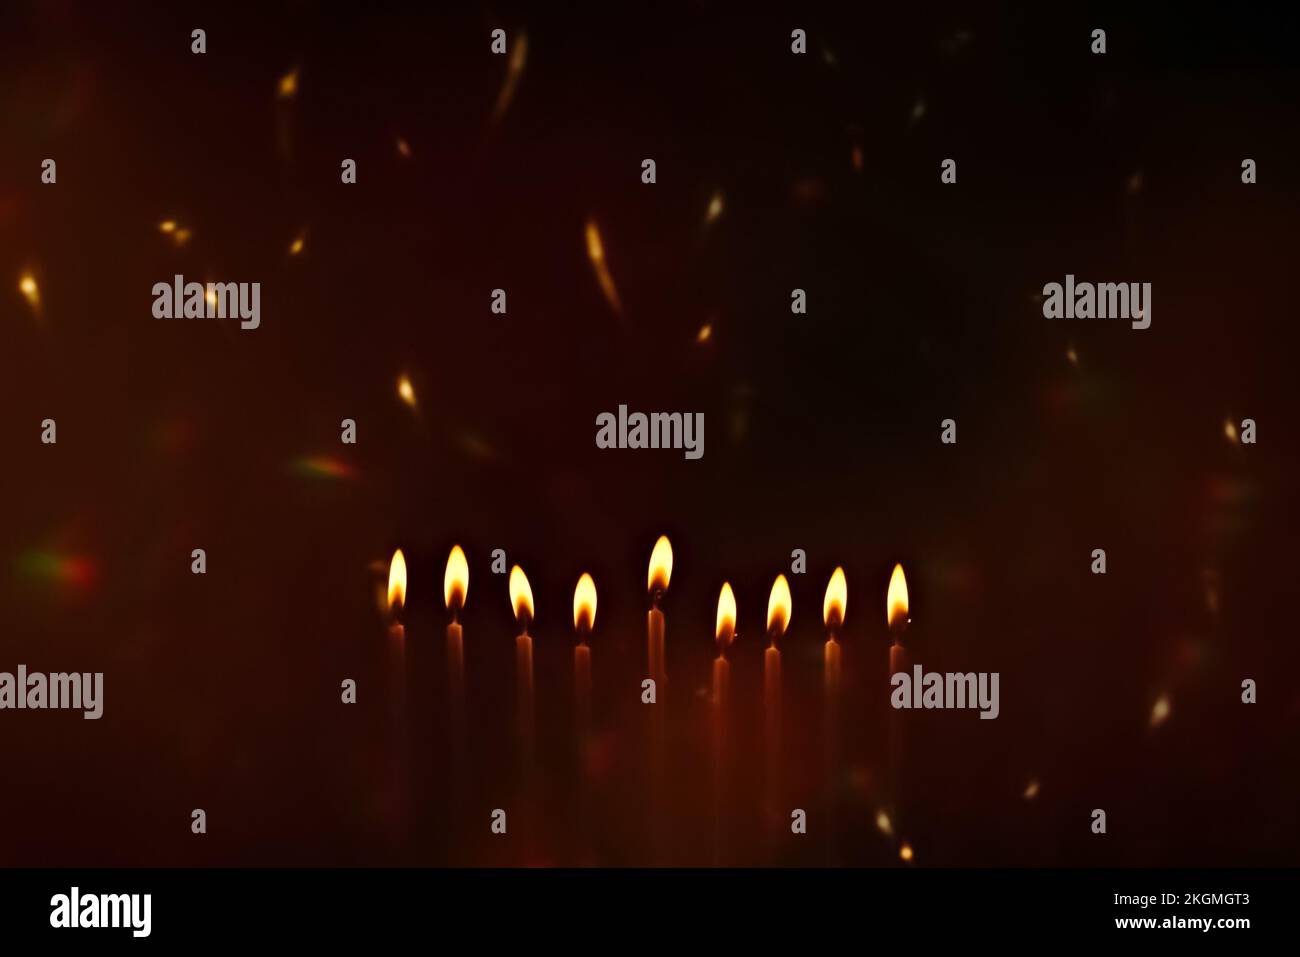 Religiöses Bild des jüdischen Feiertags Hanukka mit Kerzen der Menora und Funken vom Feuer in der Luft. Speicherplatz kopieren. Platz für Text. Stockfoto